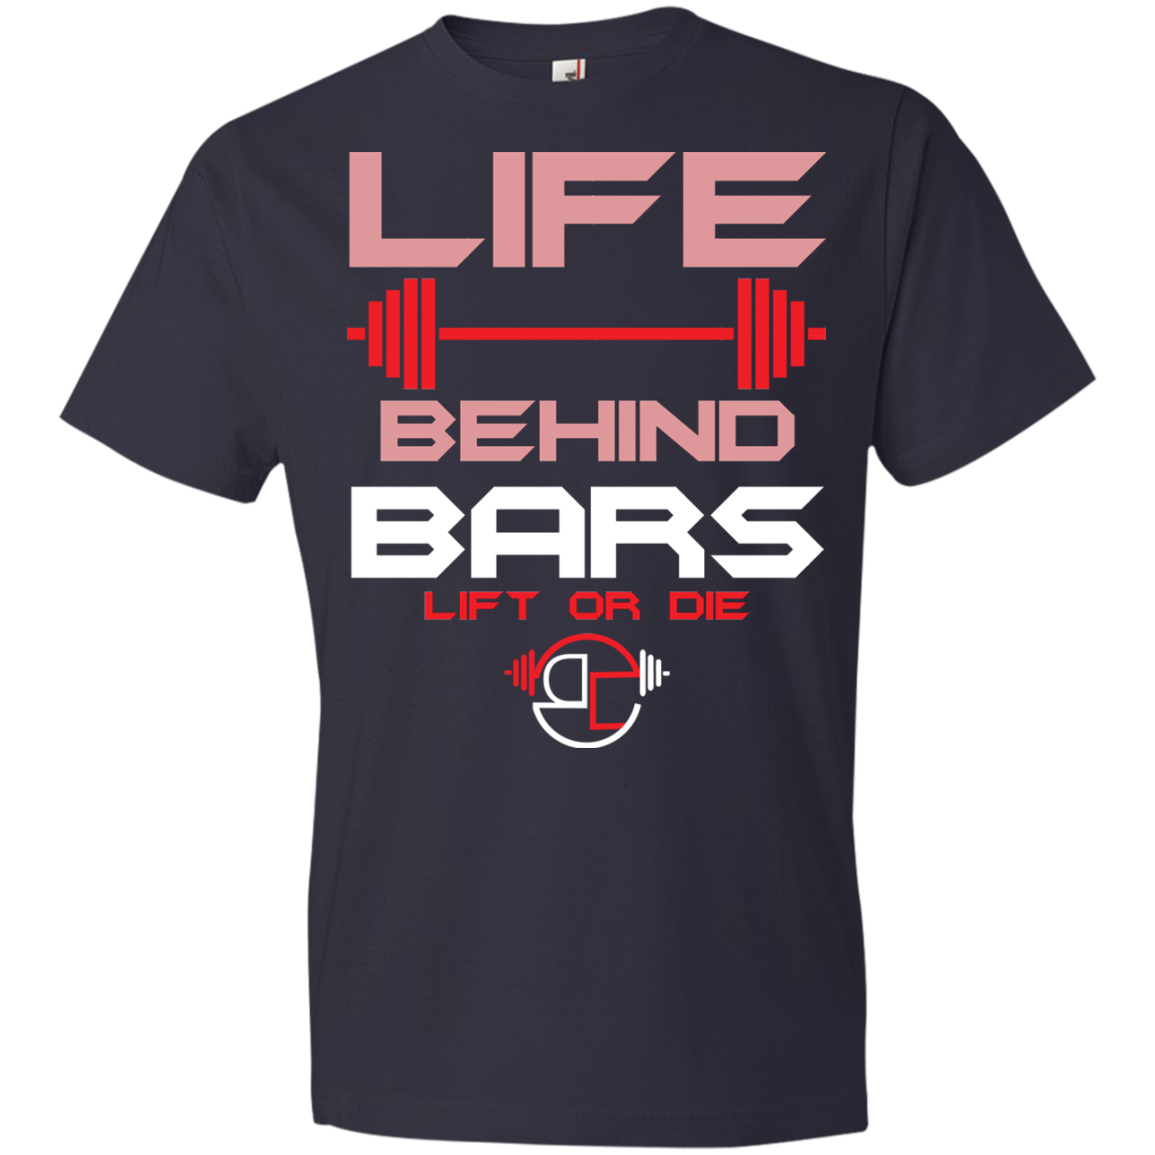 Life behind bars T-Shirt 4.5 oz